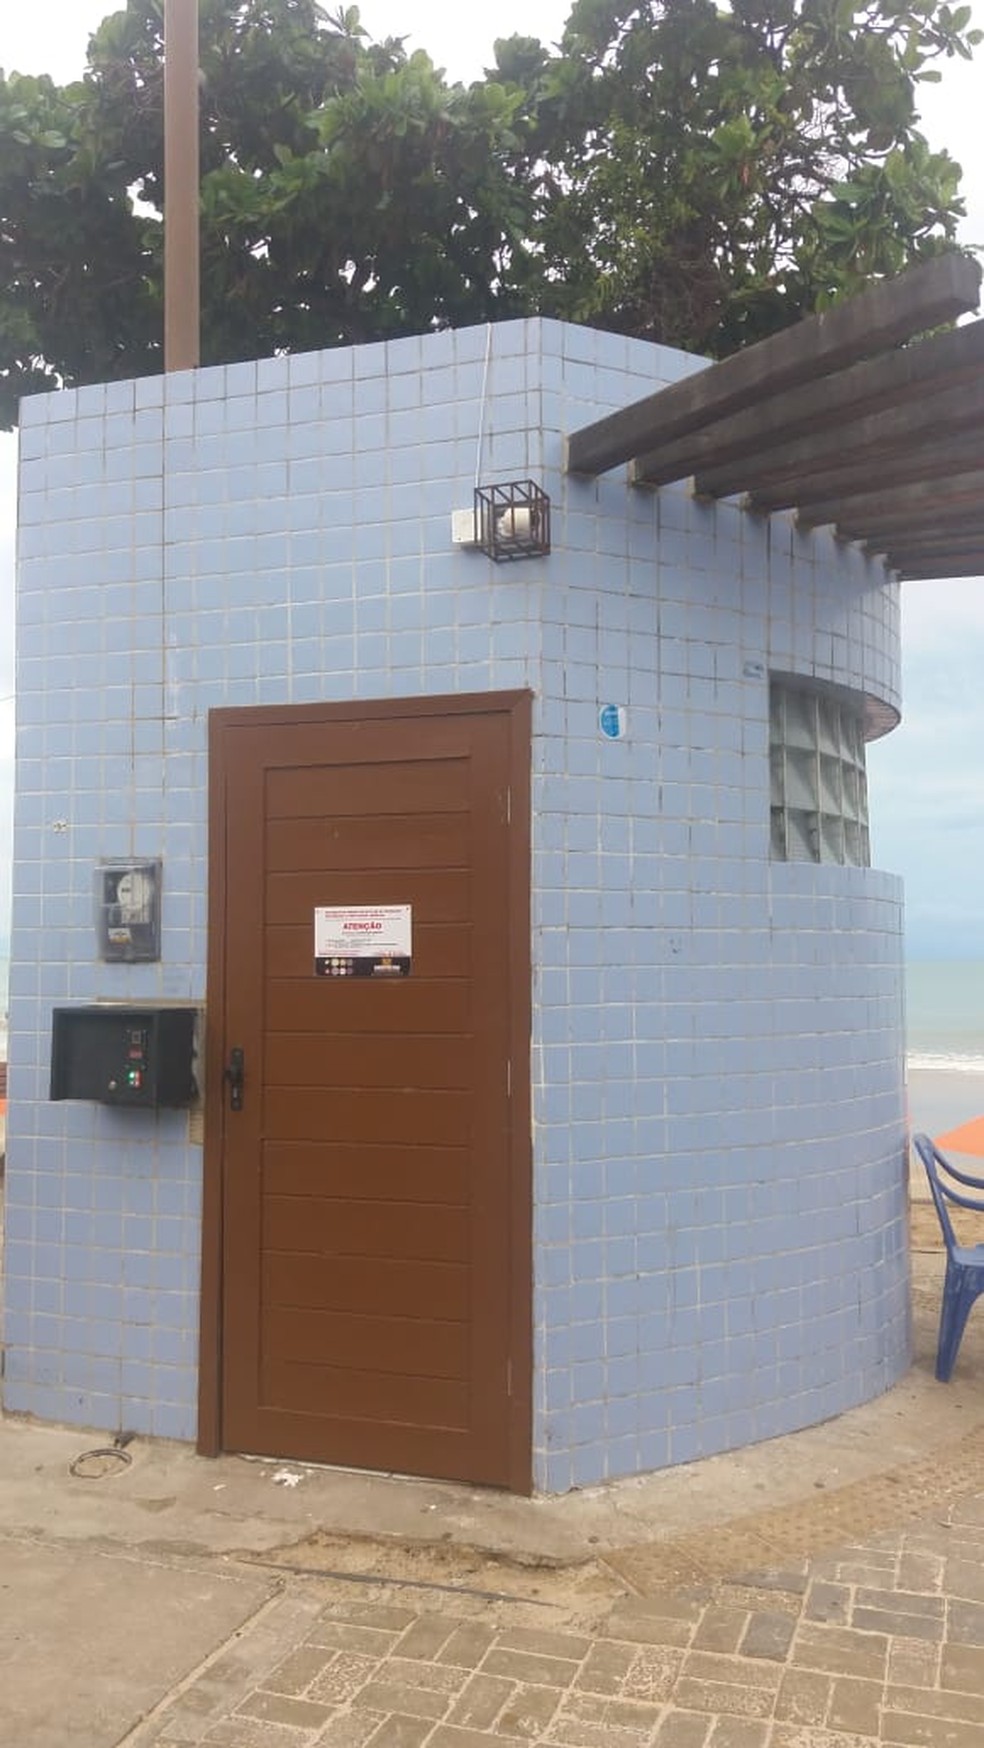 AdministraÃ§Ã£o dos banheiros da Praia de Ponta Negra foi entregue Ã  iniciativa privada pela prefeitura â Foto: DivulgaÃ§Ã£o